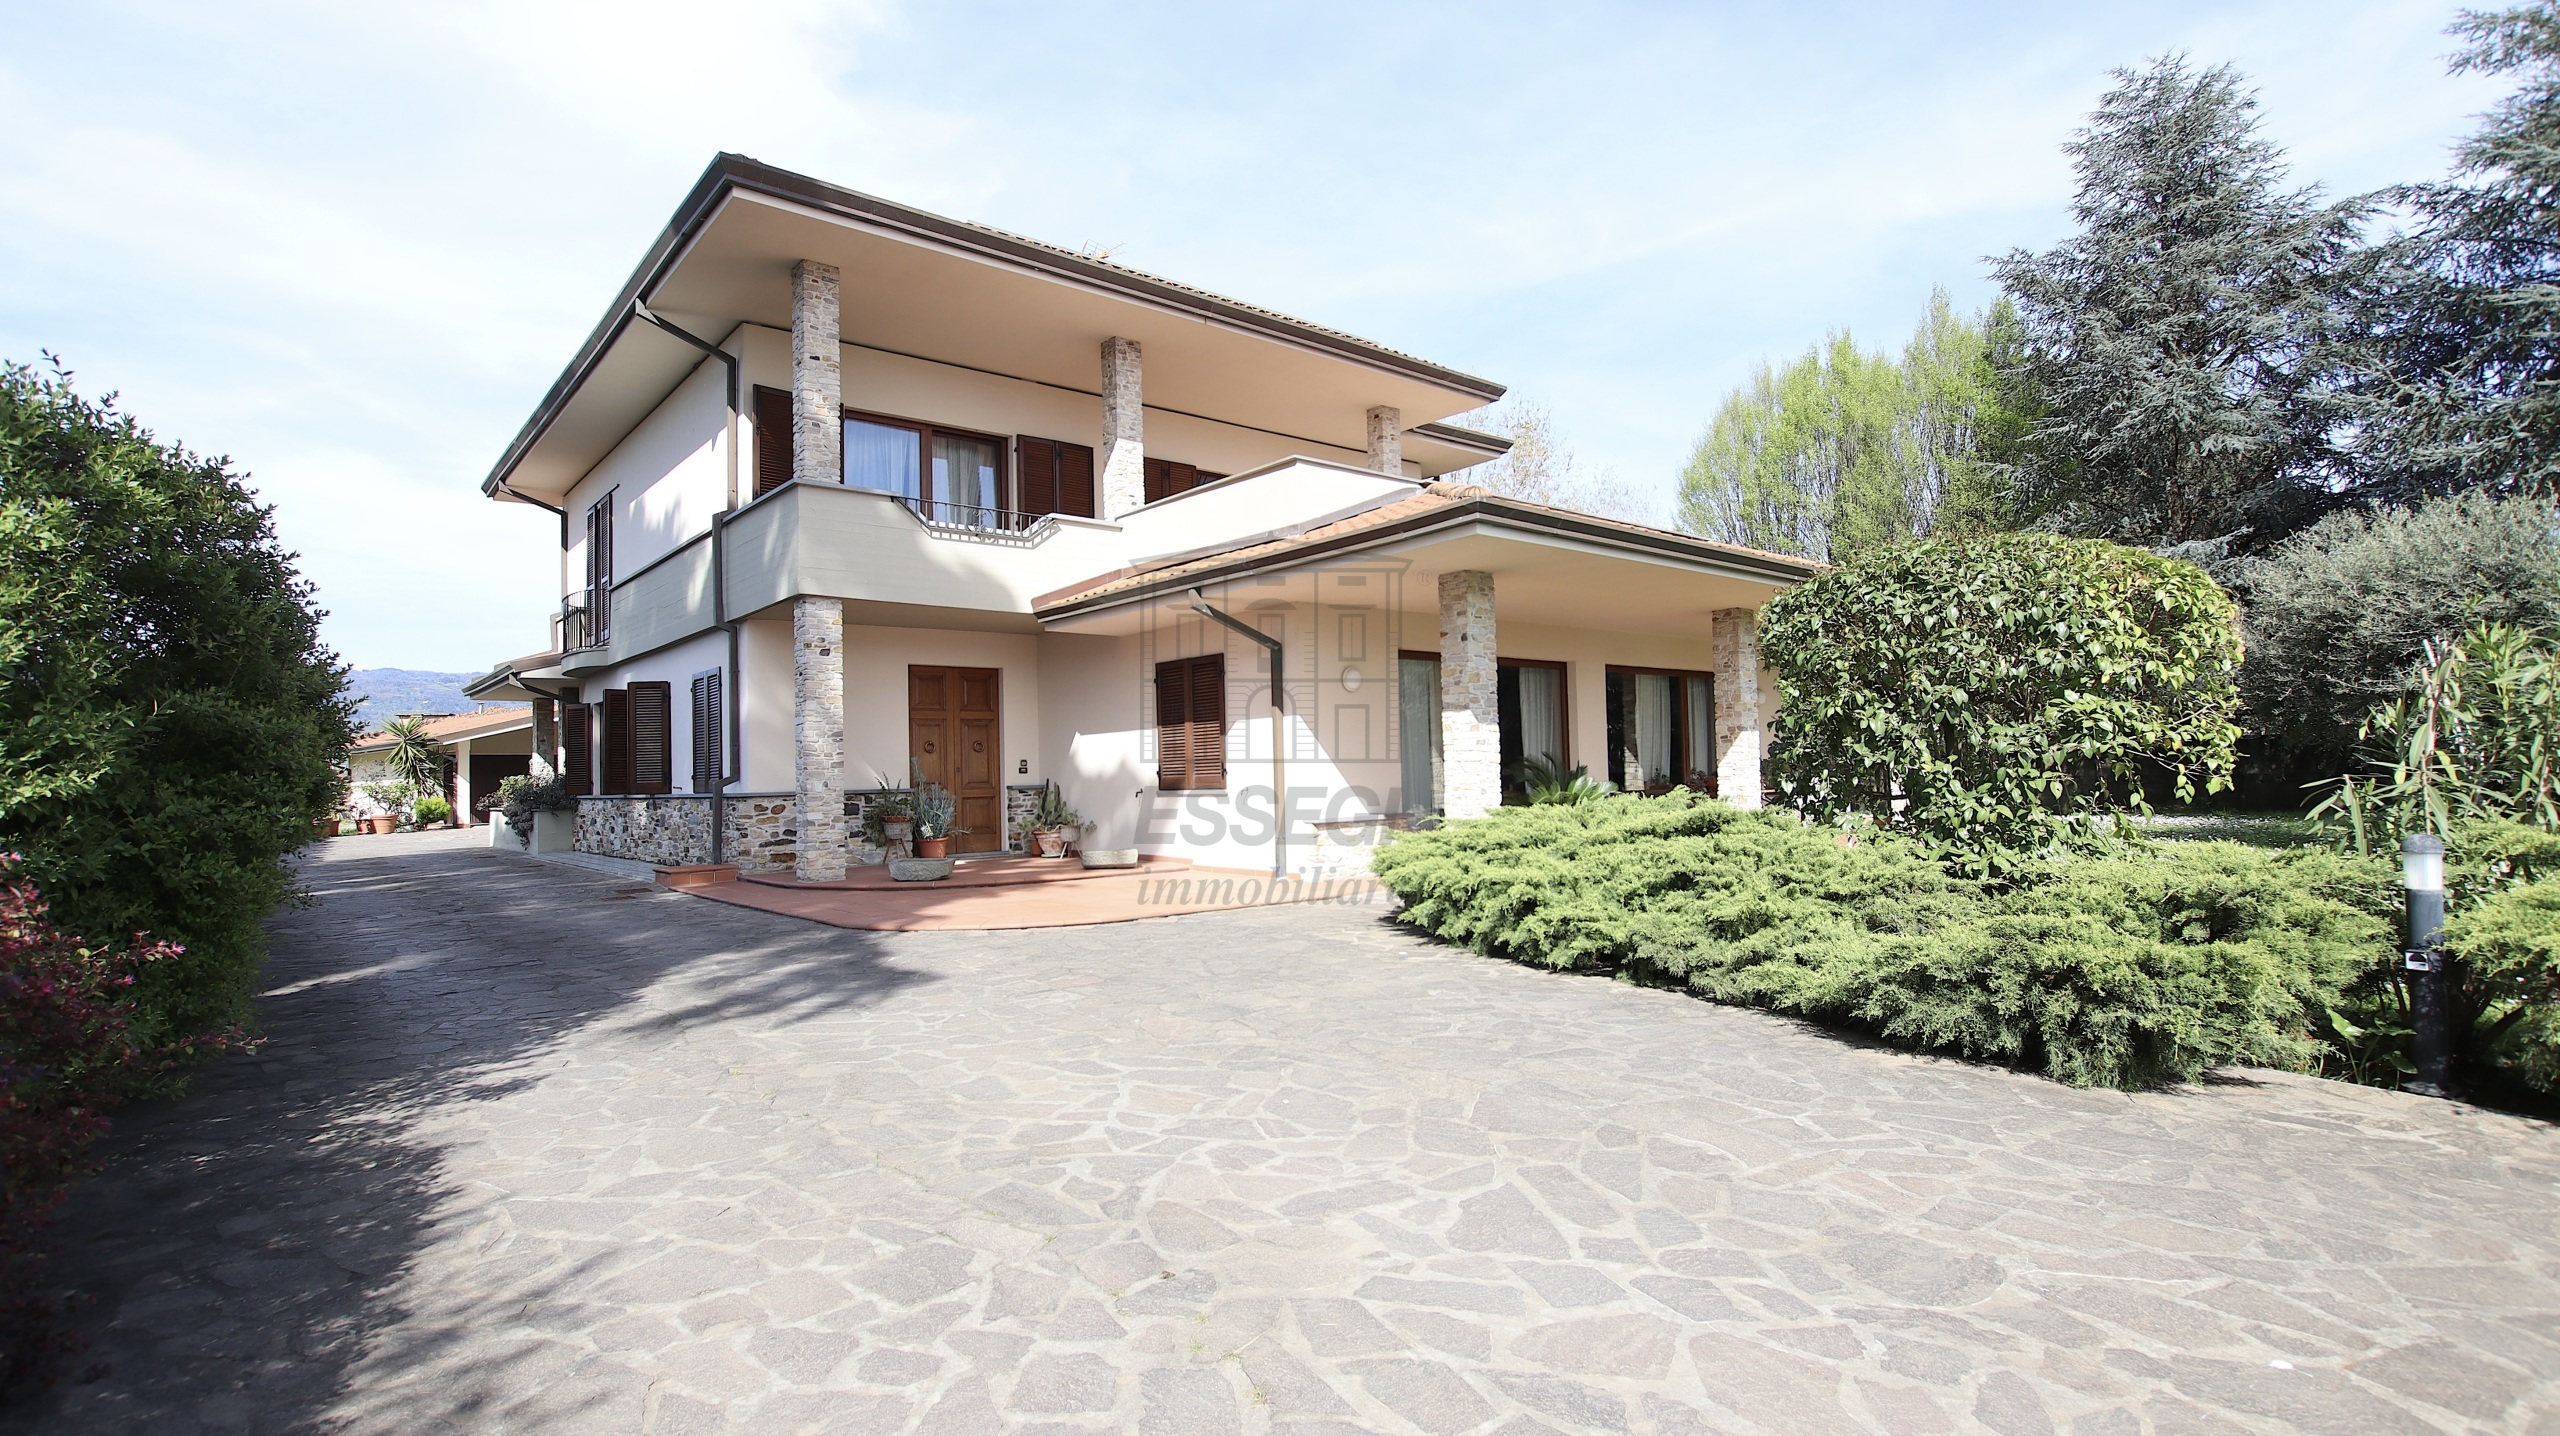 Villa con giardino in via del fanuccio, Lucca